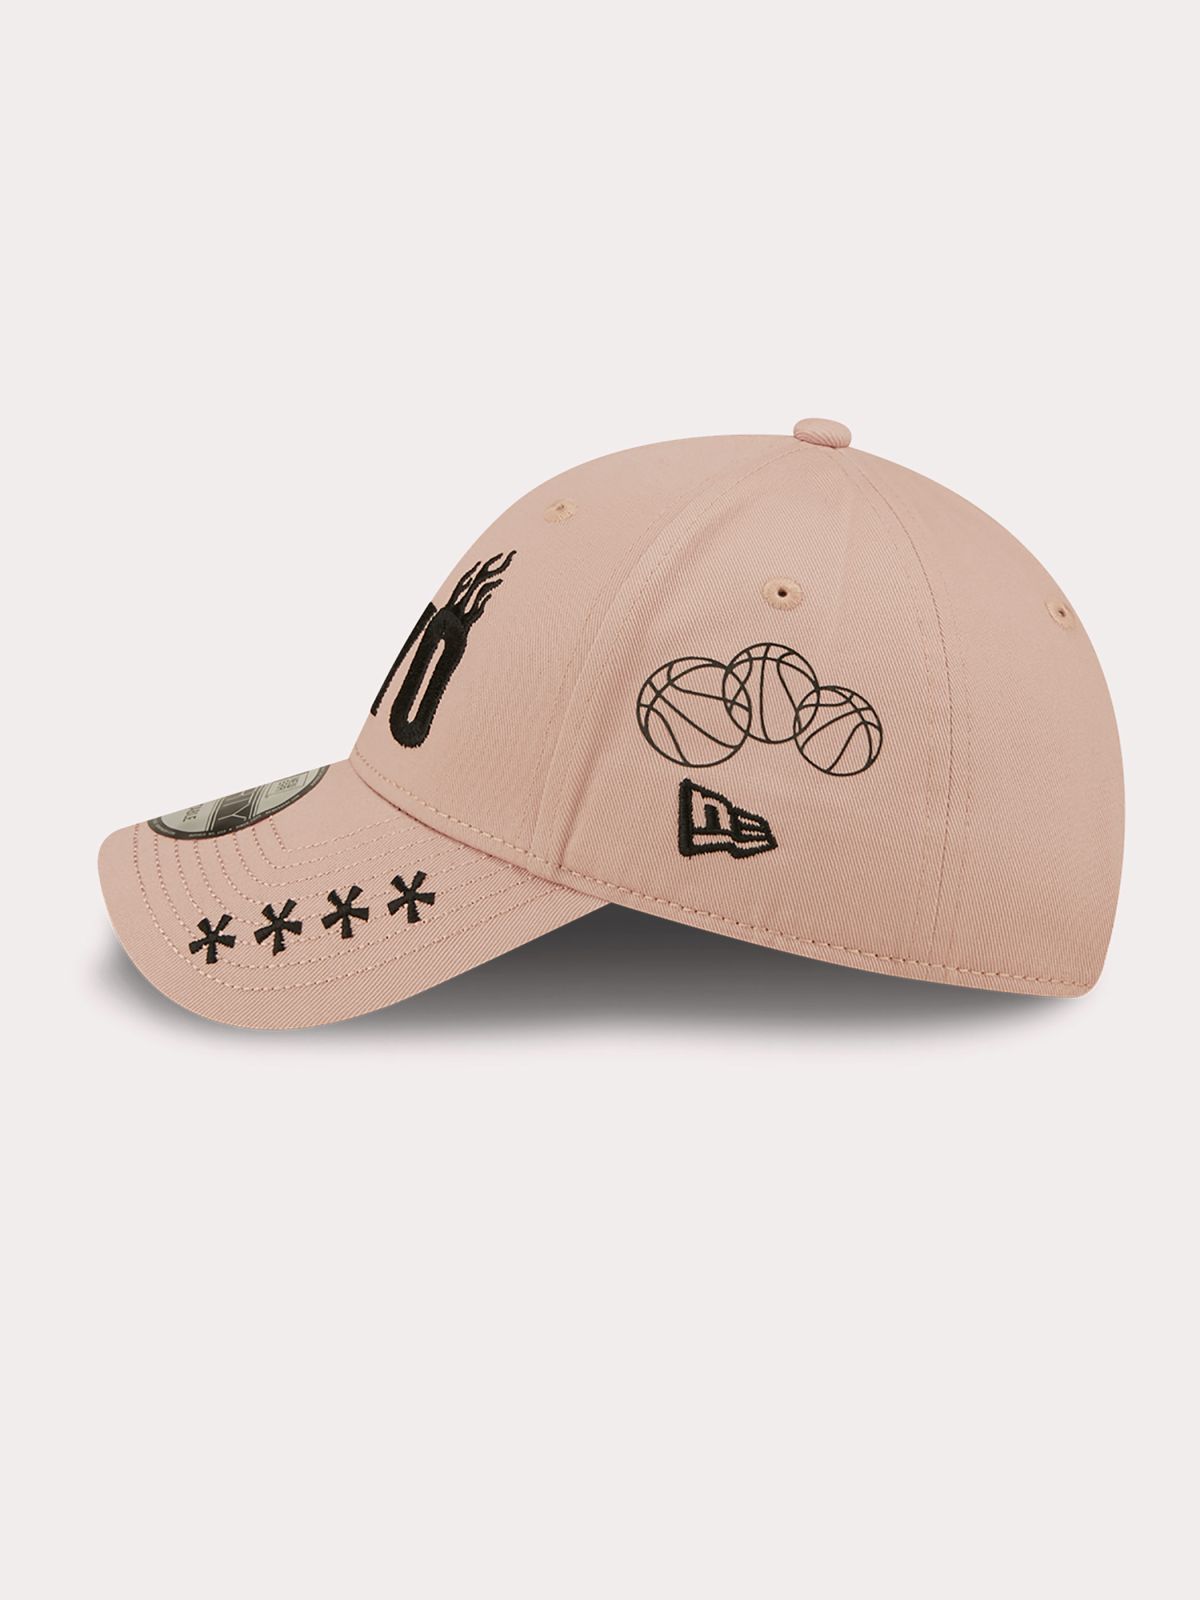  כובע מצחייה עם לוגו Tokyo / נשים של NEW ERA